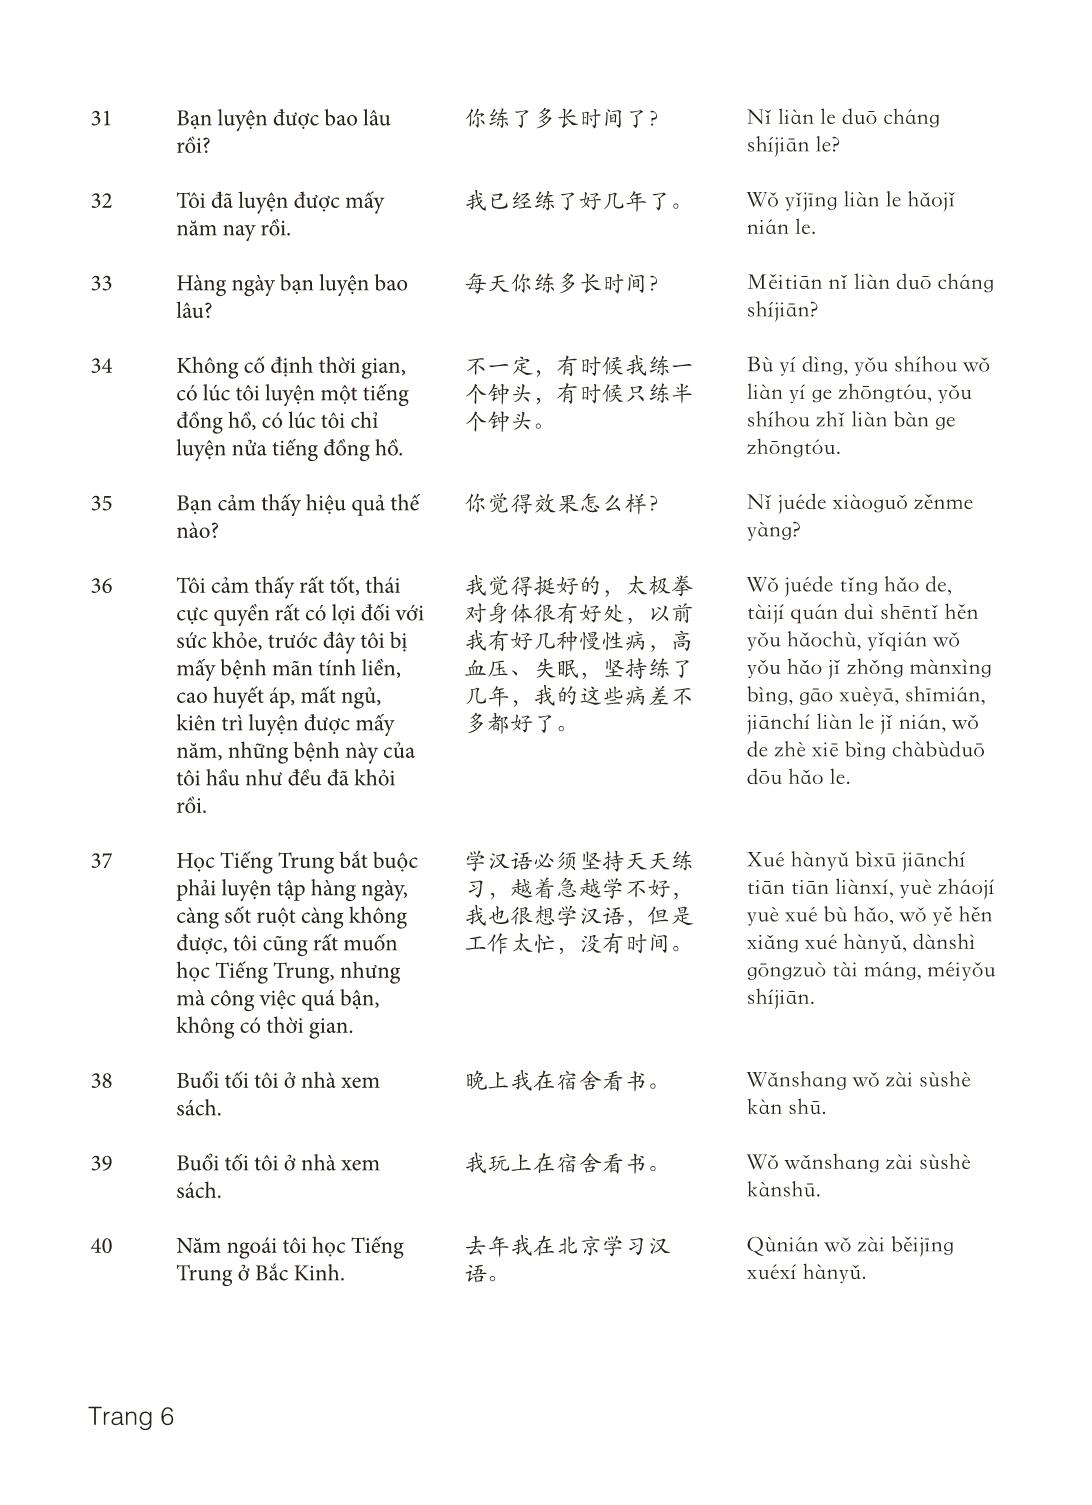 3000 Câu đàm thoại tiếng Hoa - Phần 14 trang 6